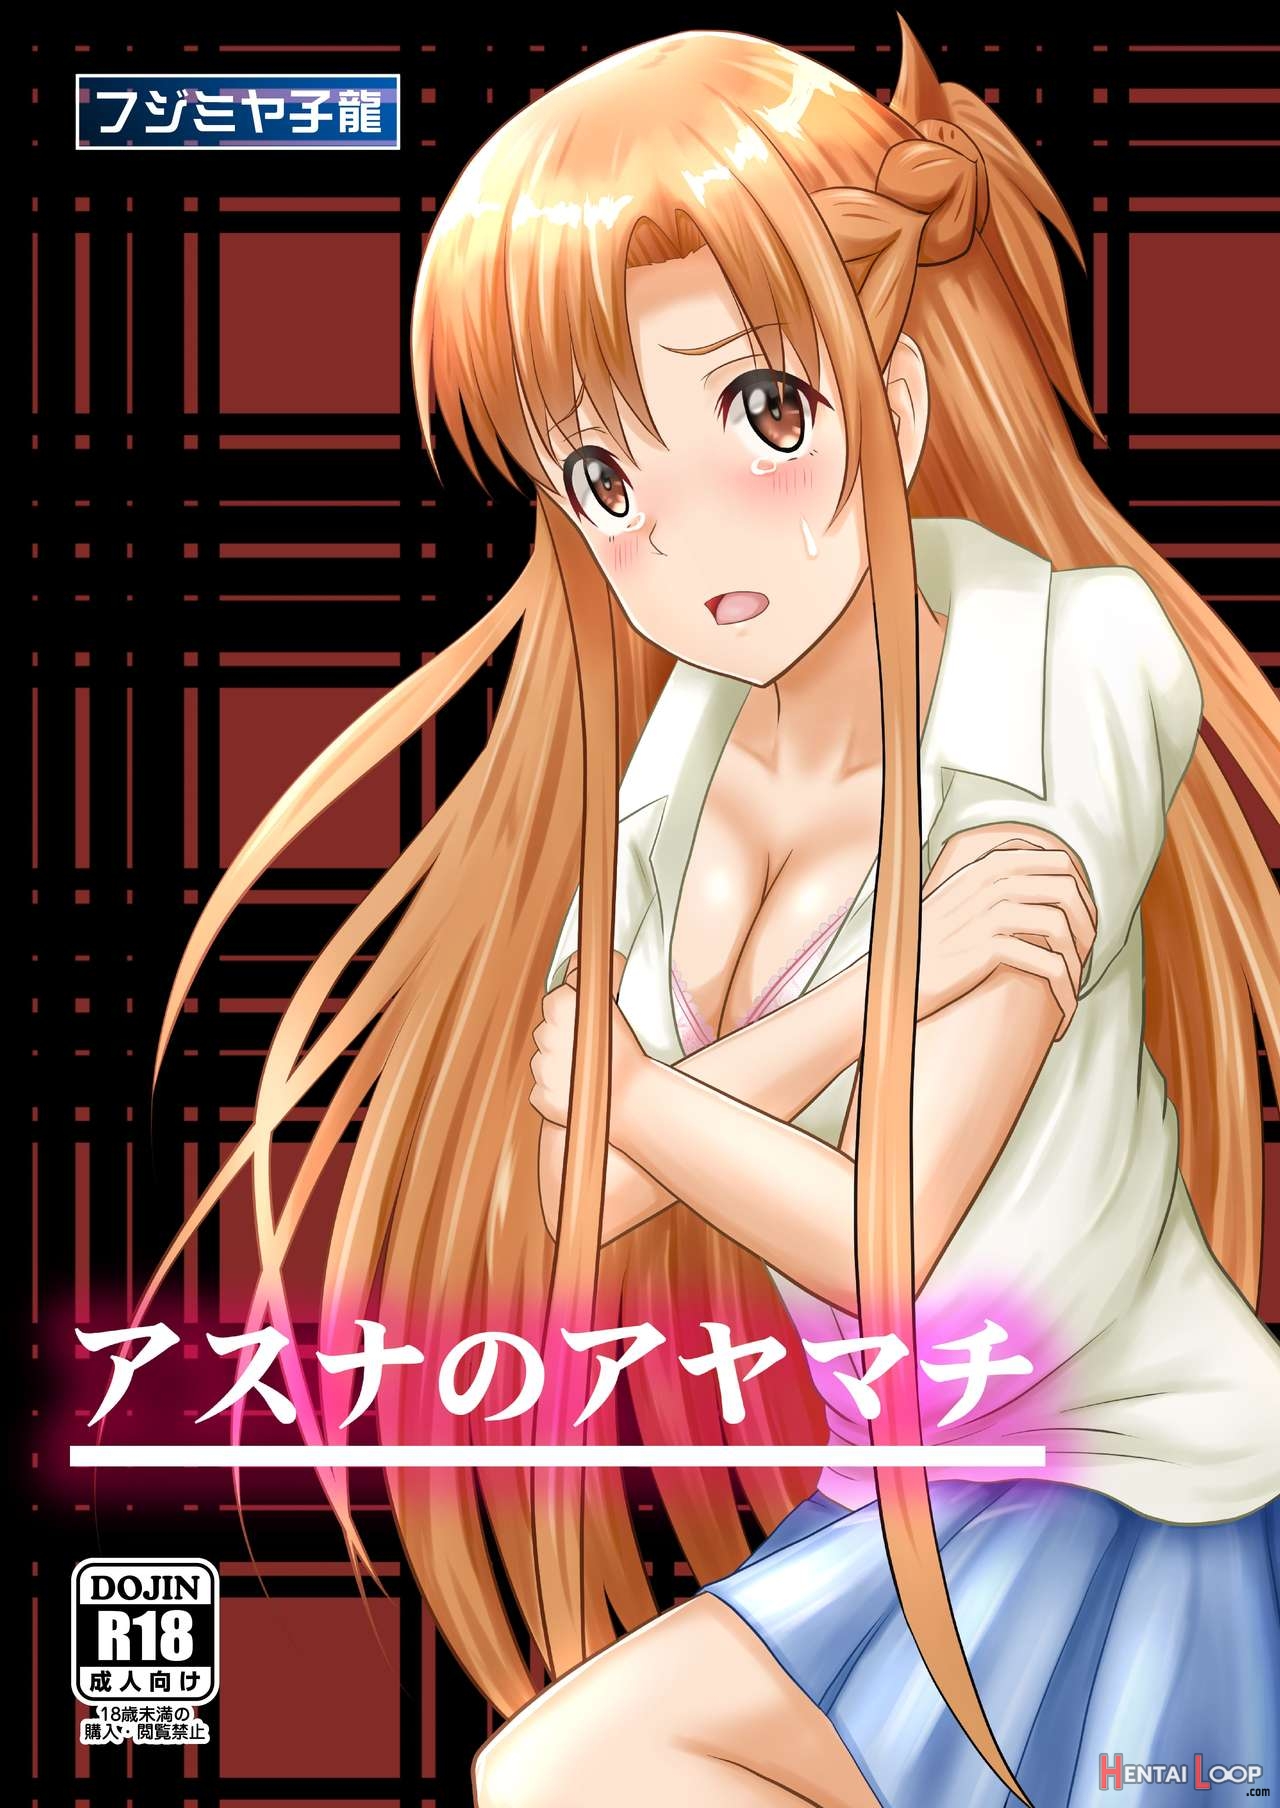 Asuna Sword Art Online Porn Story - Asuna No Ayamachi (by Fujimiya Siryu) - Hentai doujinshi for free at  HentaiLoop